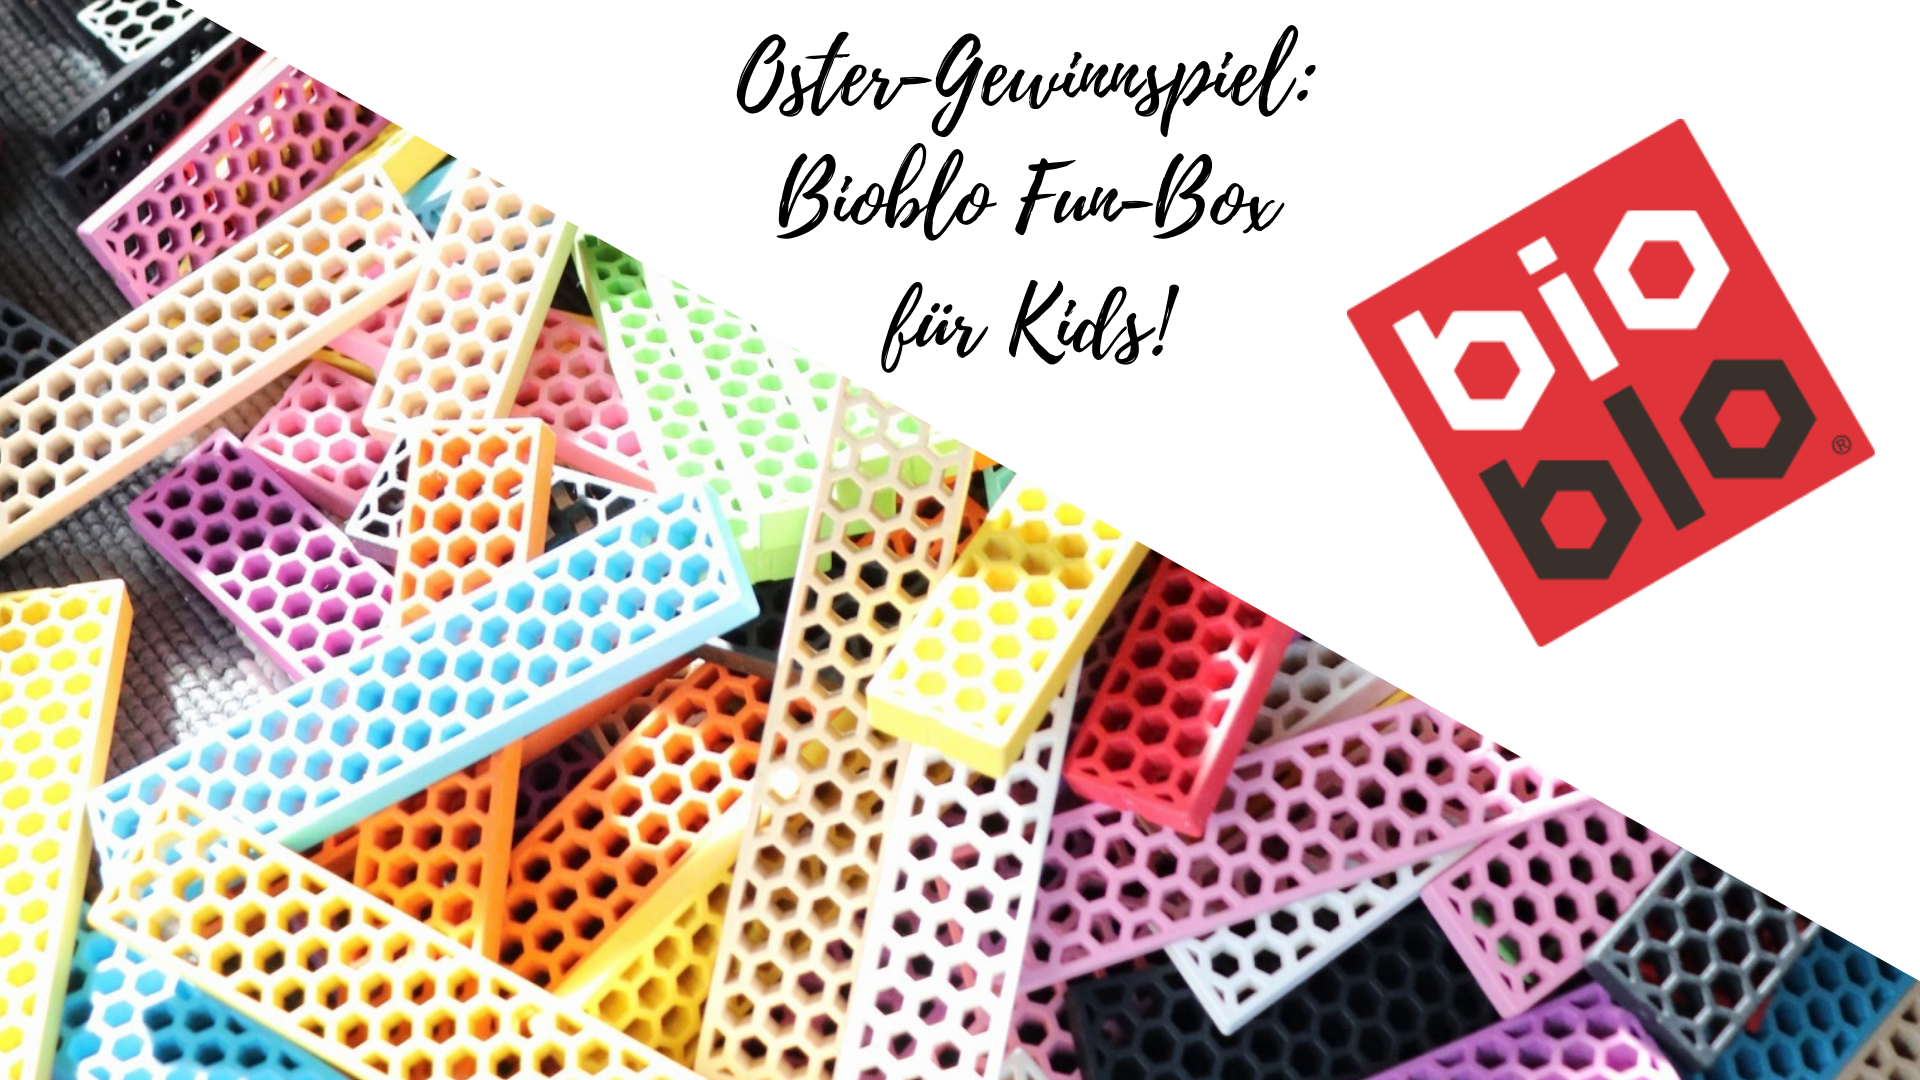 Oster-Gewinnspiel: Viel Spaß mit den knallbunten & nachhaltigen Bausteinen von Bioblo!